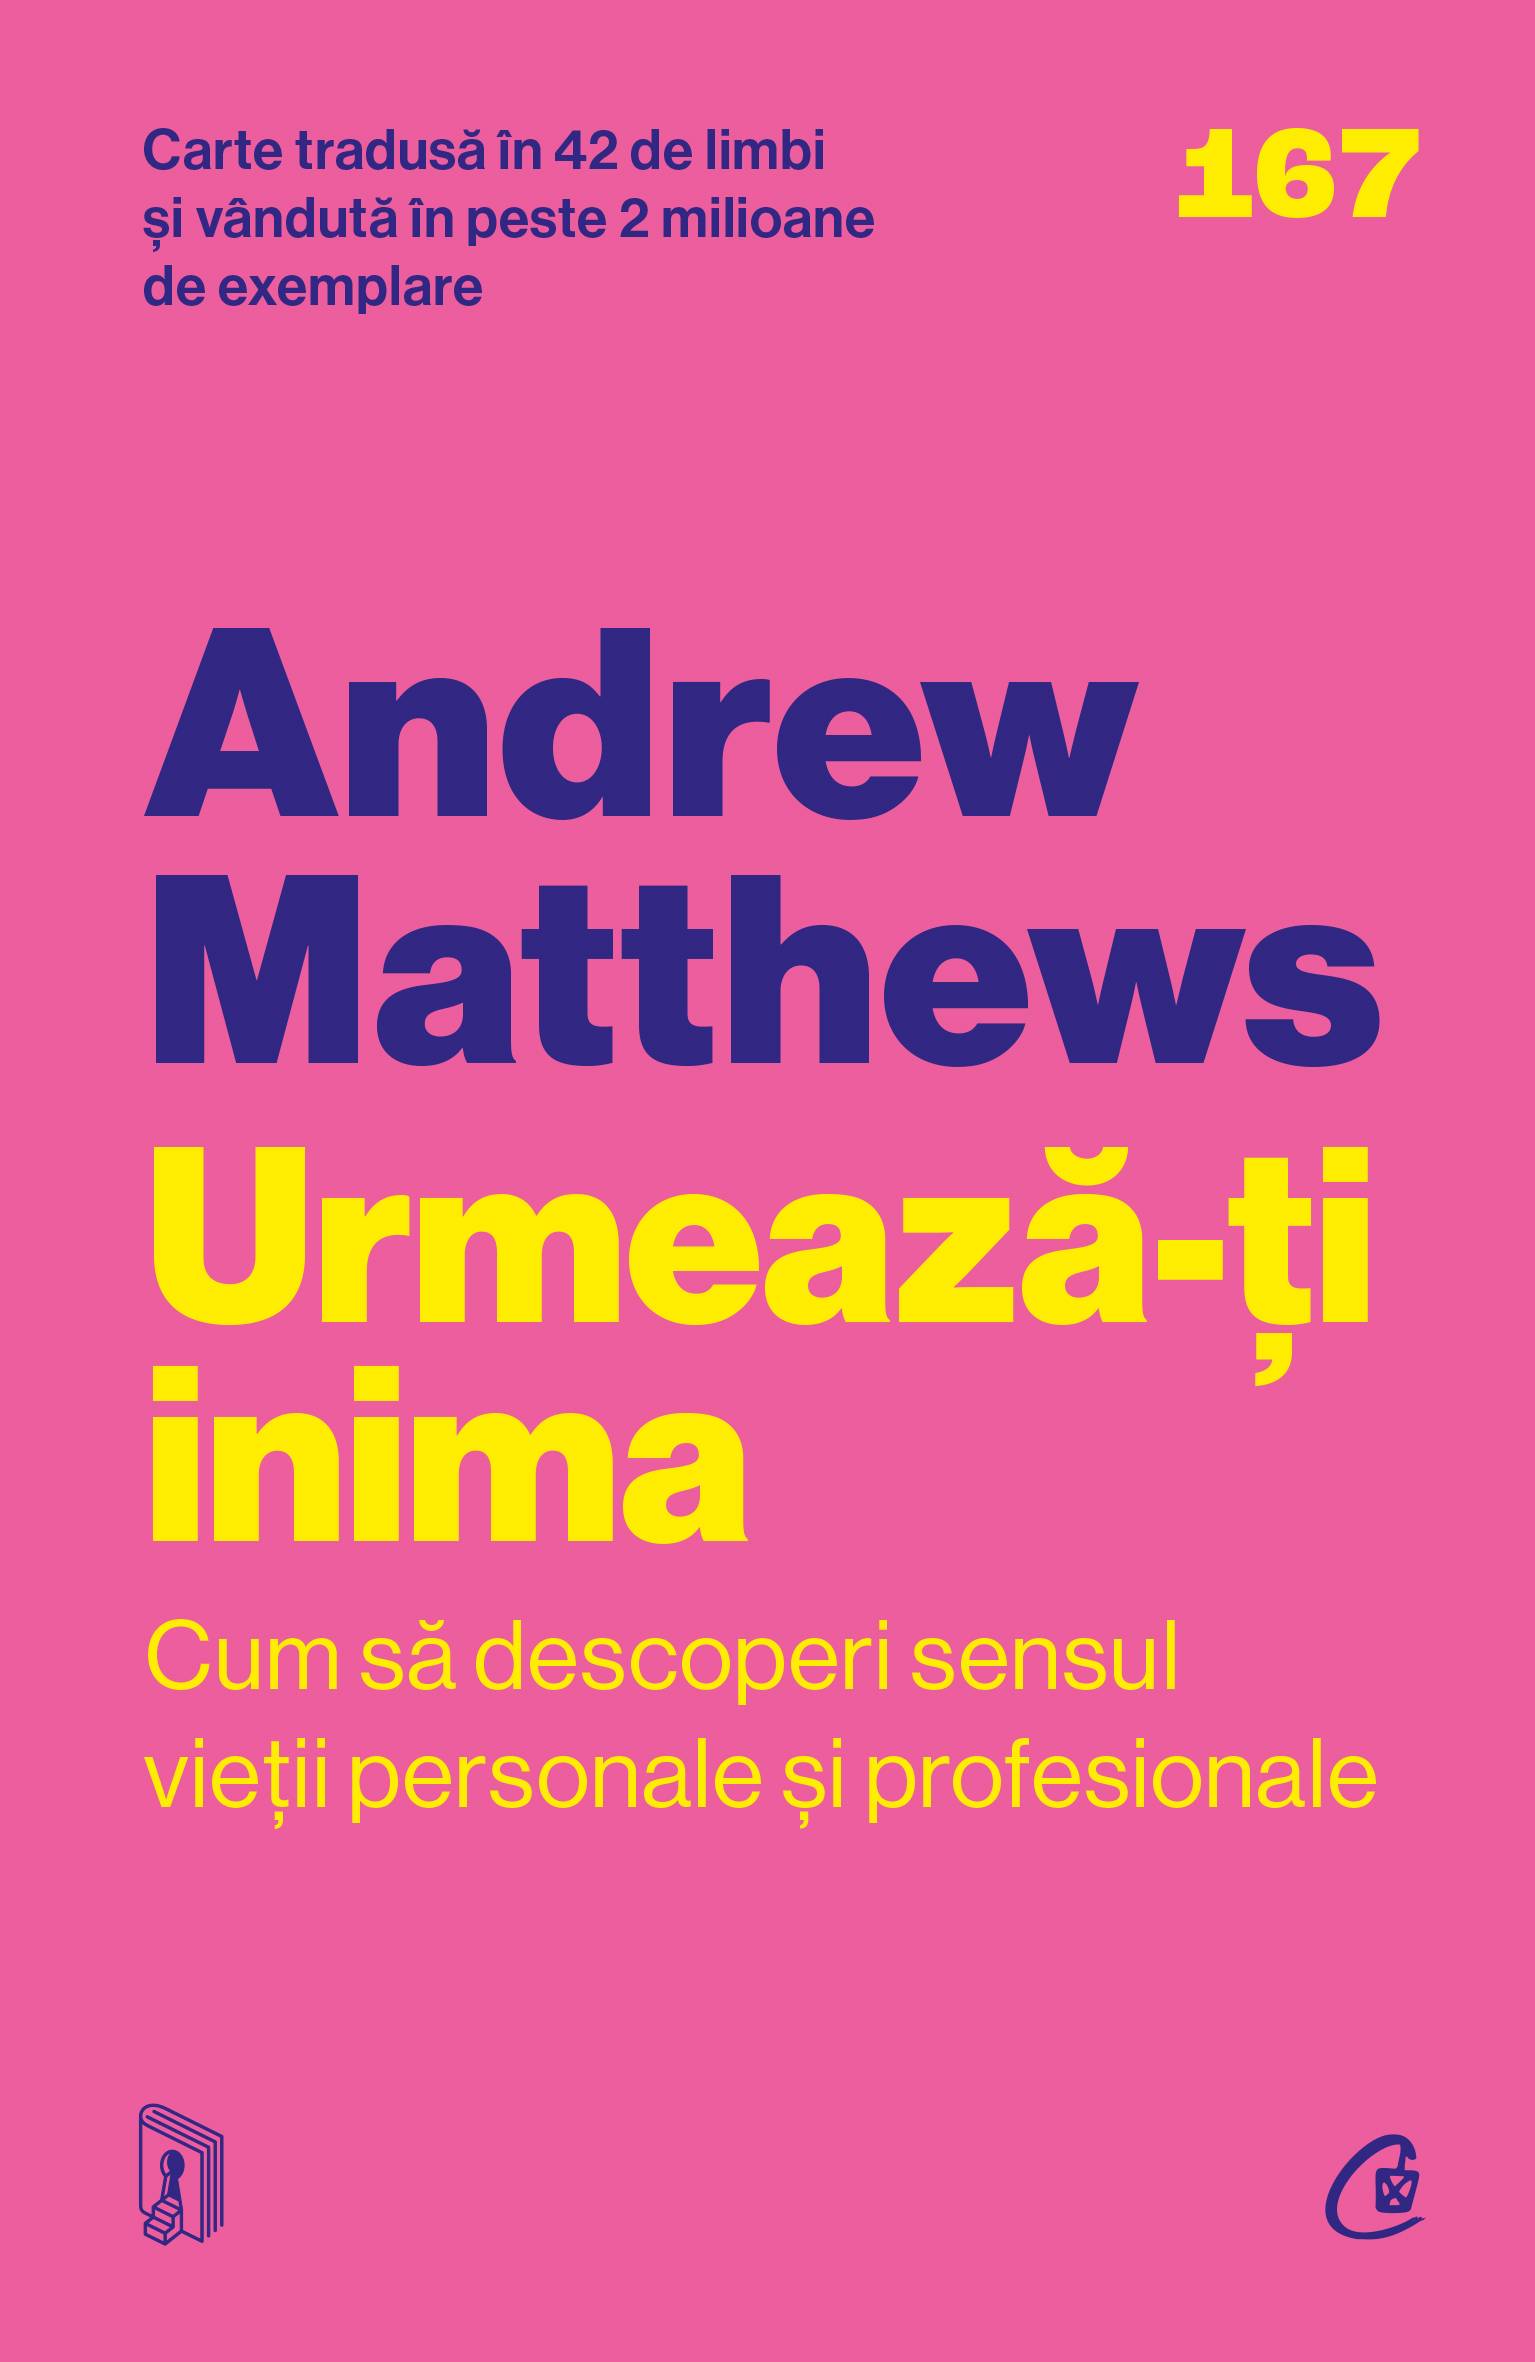 Urmeaza-ti inima, Andrew Matthews, carte - Curtea Veche